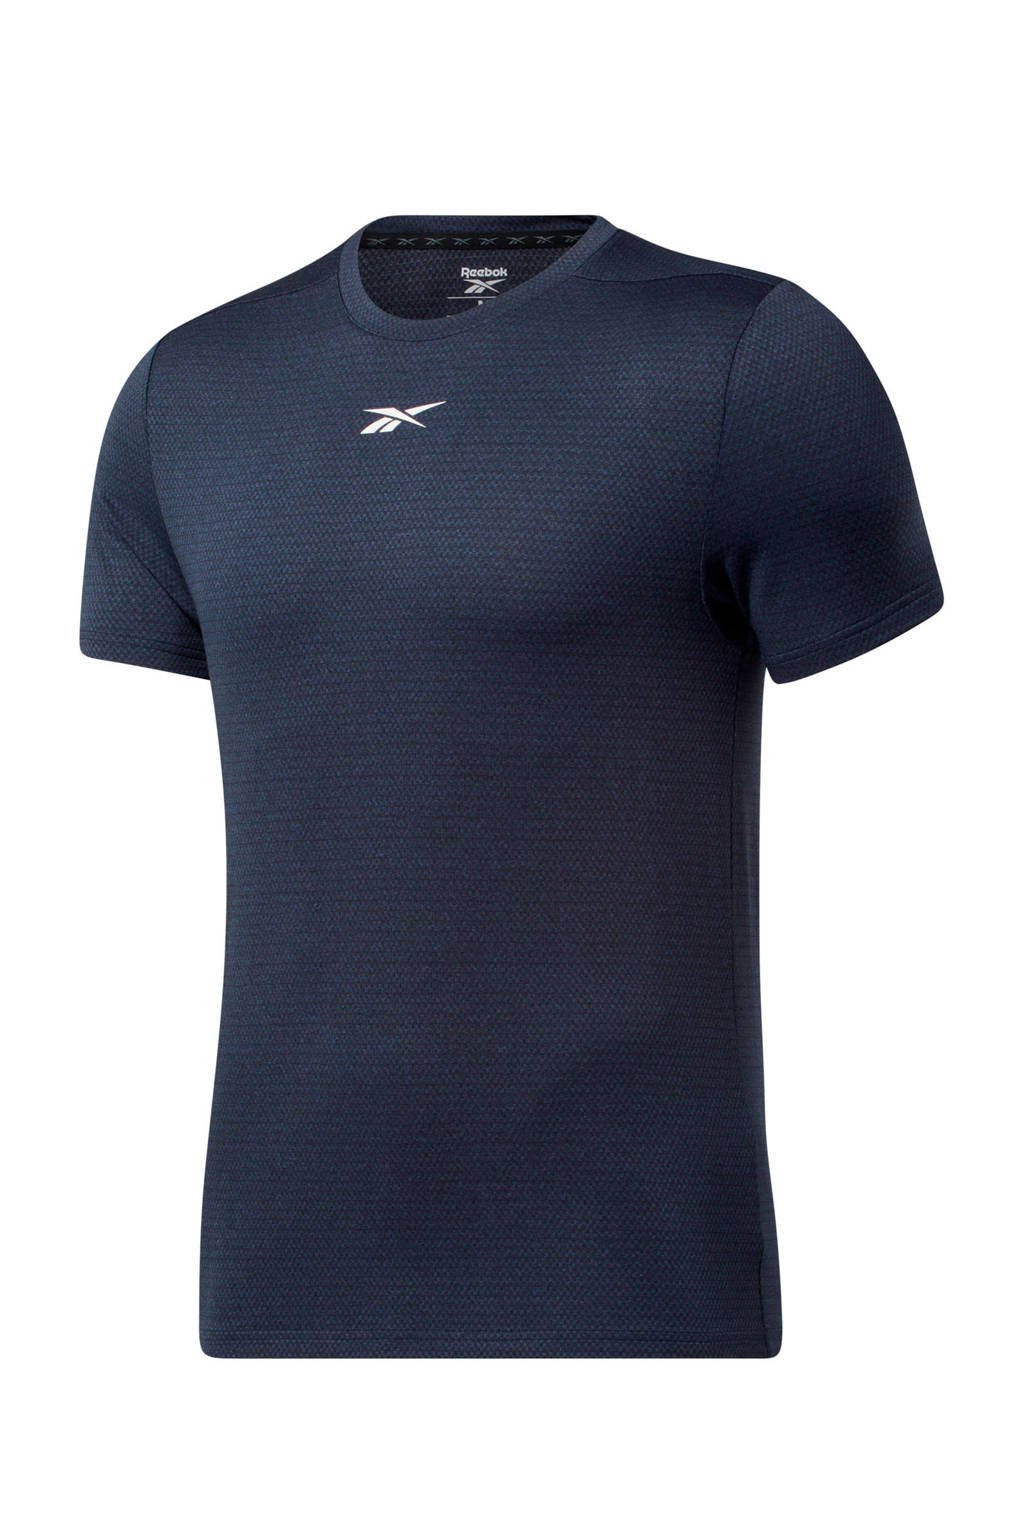 Donkerblauwe heren Reebok Training sport T-shirt van polyester met logo dessin, korte mouwen en ronde hals